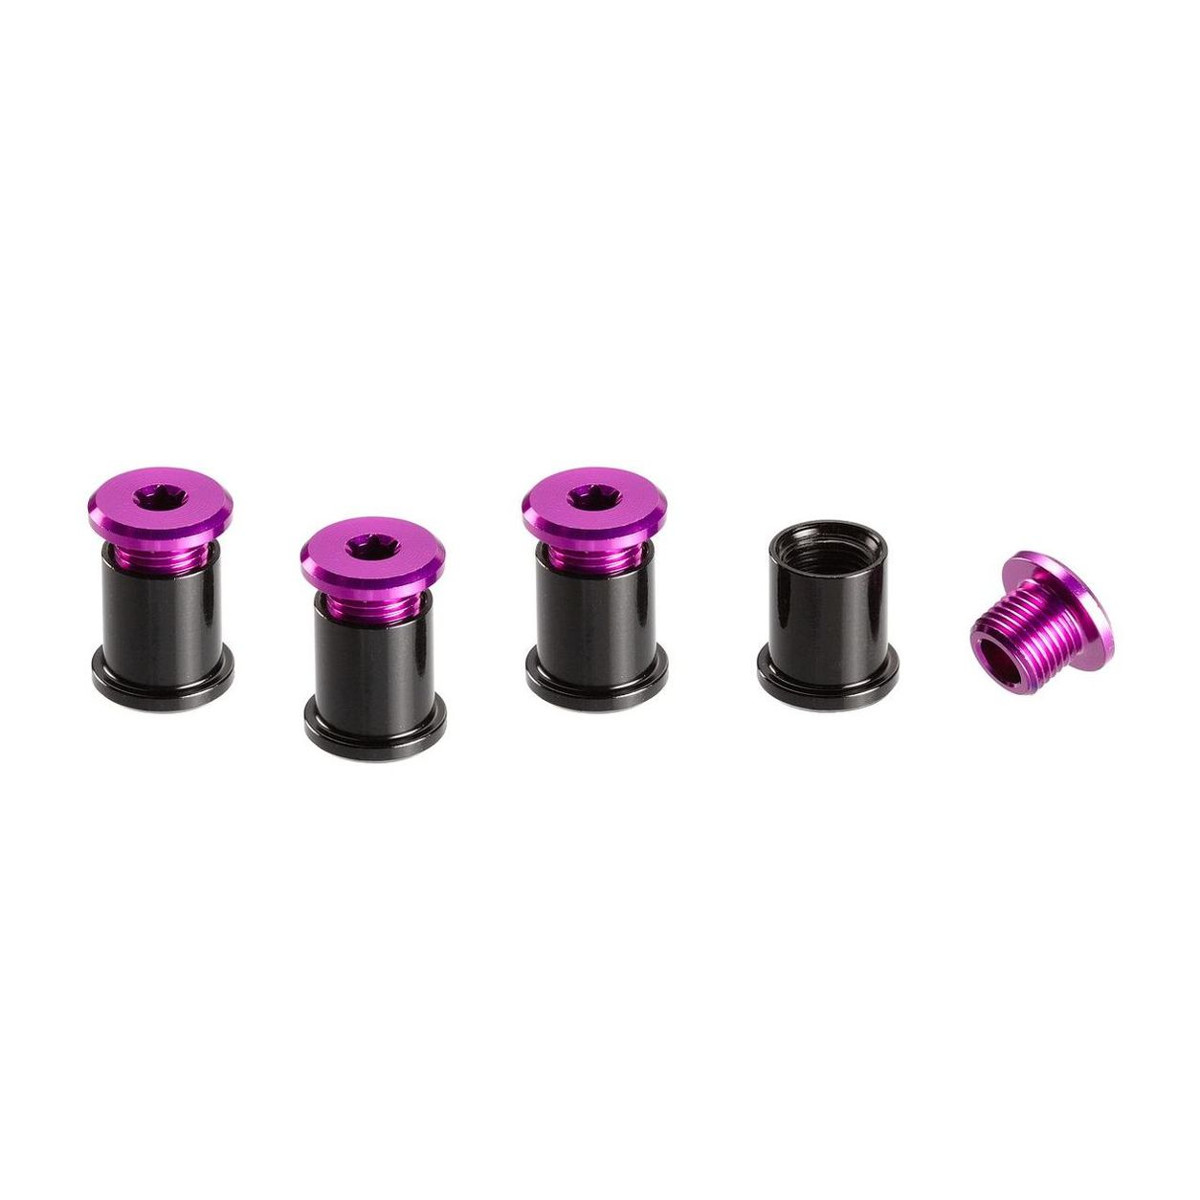 E*thirteen Kit de Vis Cheminée  Purple, Aluminium, T25 6 mm Screws/ T30 11 mm Nuts, 4 pcs each